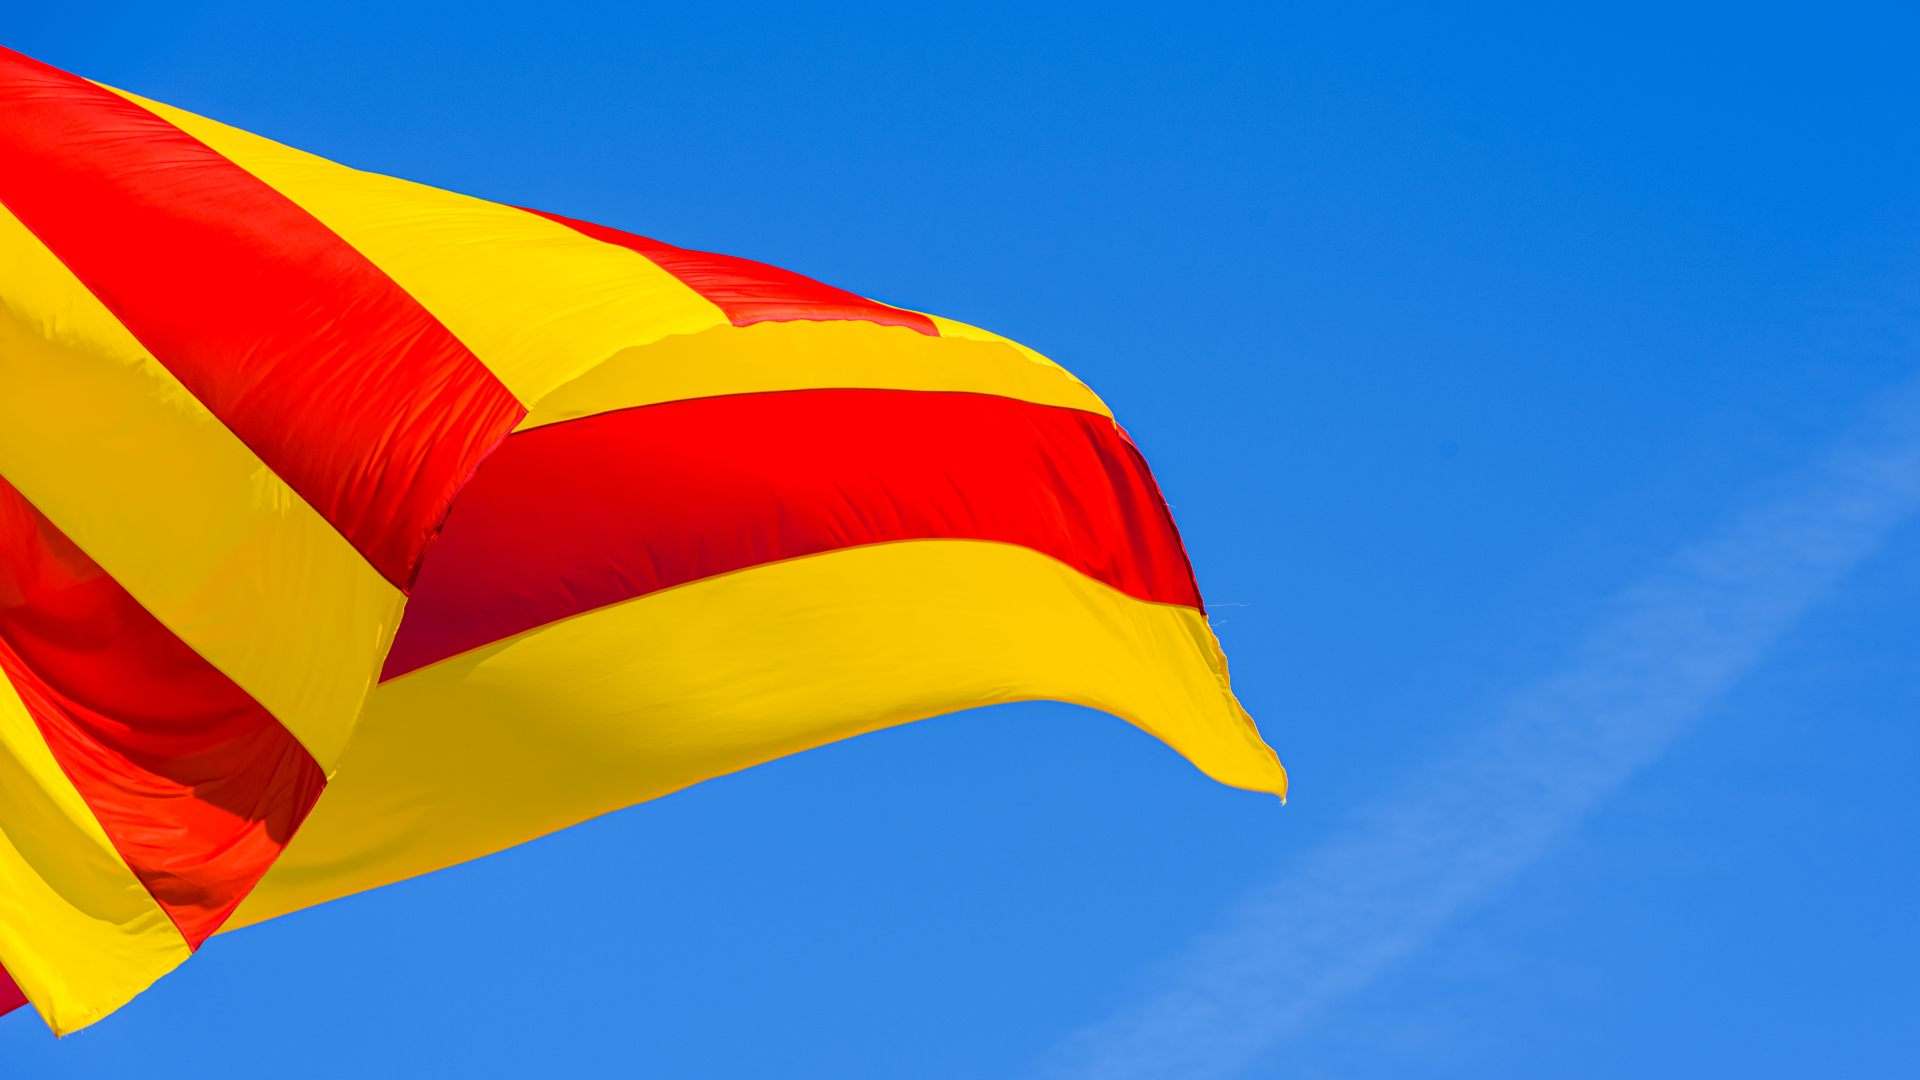 3 coses que la majoria fem i que estan provocant la pèrdua del català: Segur que tu també en fas alguna